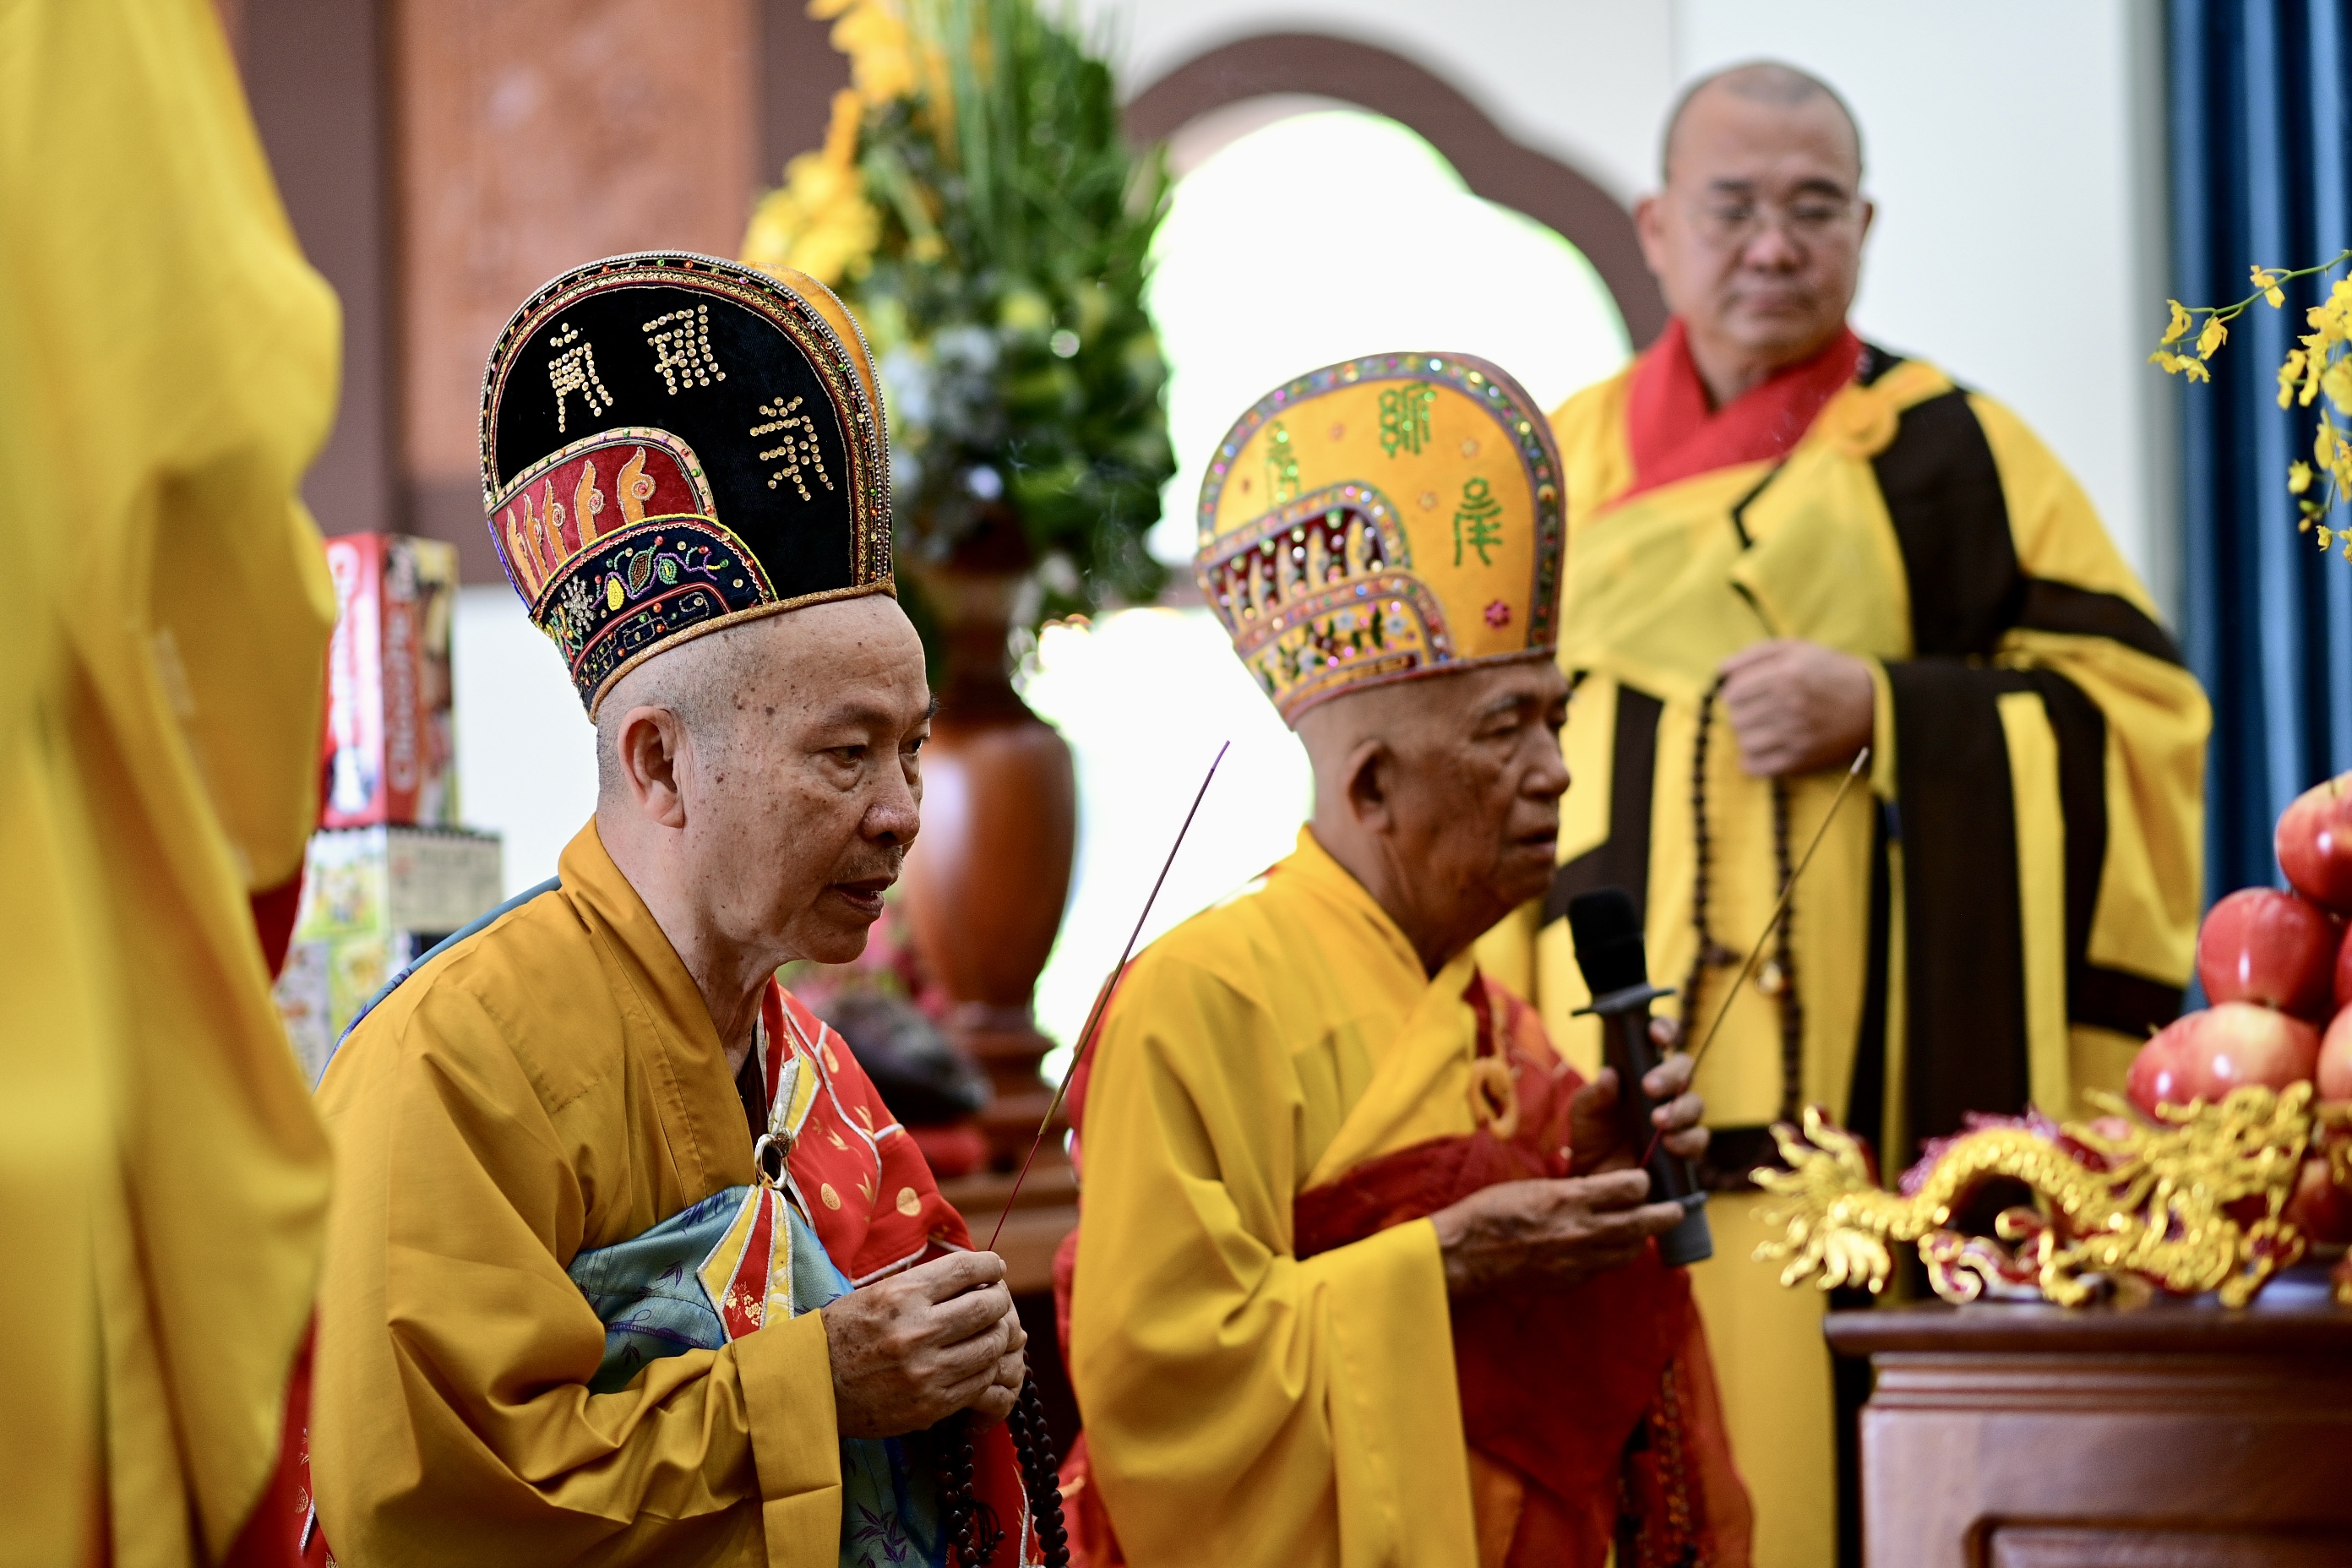 Dưới sự chủ trì của Hòa thượng Thích Niệm Thới - Trưởng ban Trị sự Phật giáo tỉnh Tây Ninh, Lễ khánh đản Bồ Tát Quán Thế Âm diễn ra trang nghiêm từ 13h30 ngày 10/3 (nhằm ngày đản sinh của Quán Thế Âm Bồ Tát 19/02 âm lịch) tại Chùa Bà. Là ngôi chùa có tuổi đời 300 năm, Chùa Bà tại núi Bà Đen gắn liền với huyền tích Linh Sơn Thánh Mẫu – biểu tượng tín ngưỡng của người dân Nam Bộ và được người dân nơi đây tôn làm Bồ Tát. (Ảnh: Sun World Baden Mountain)